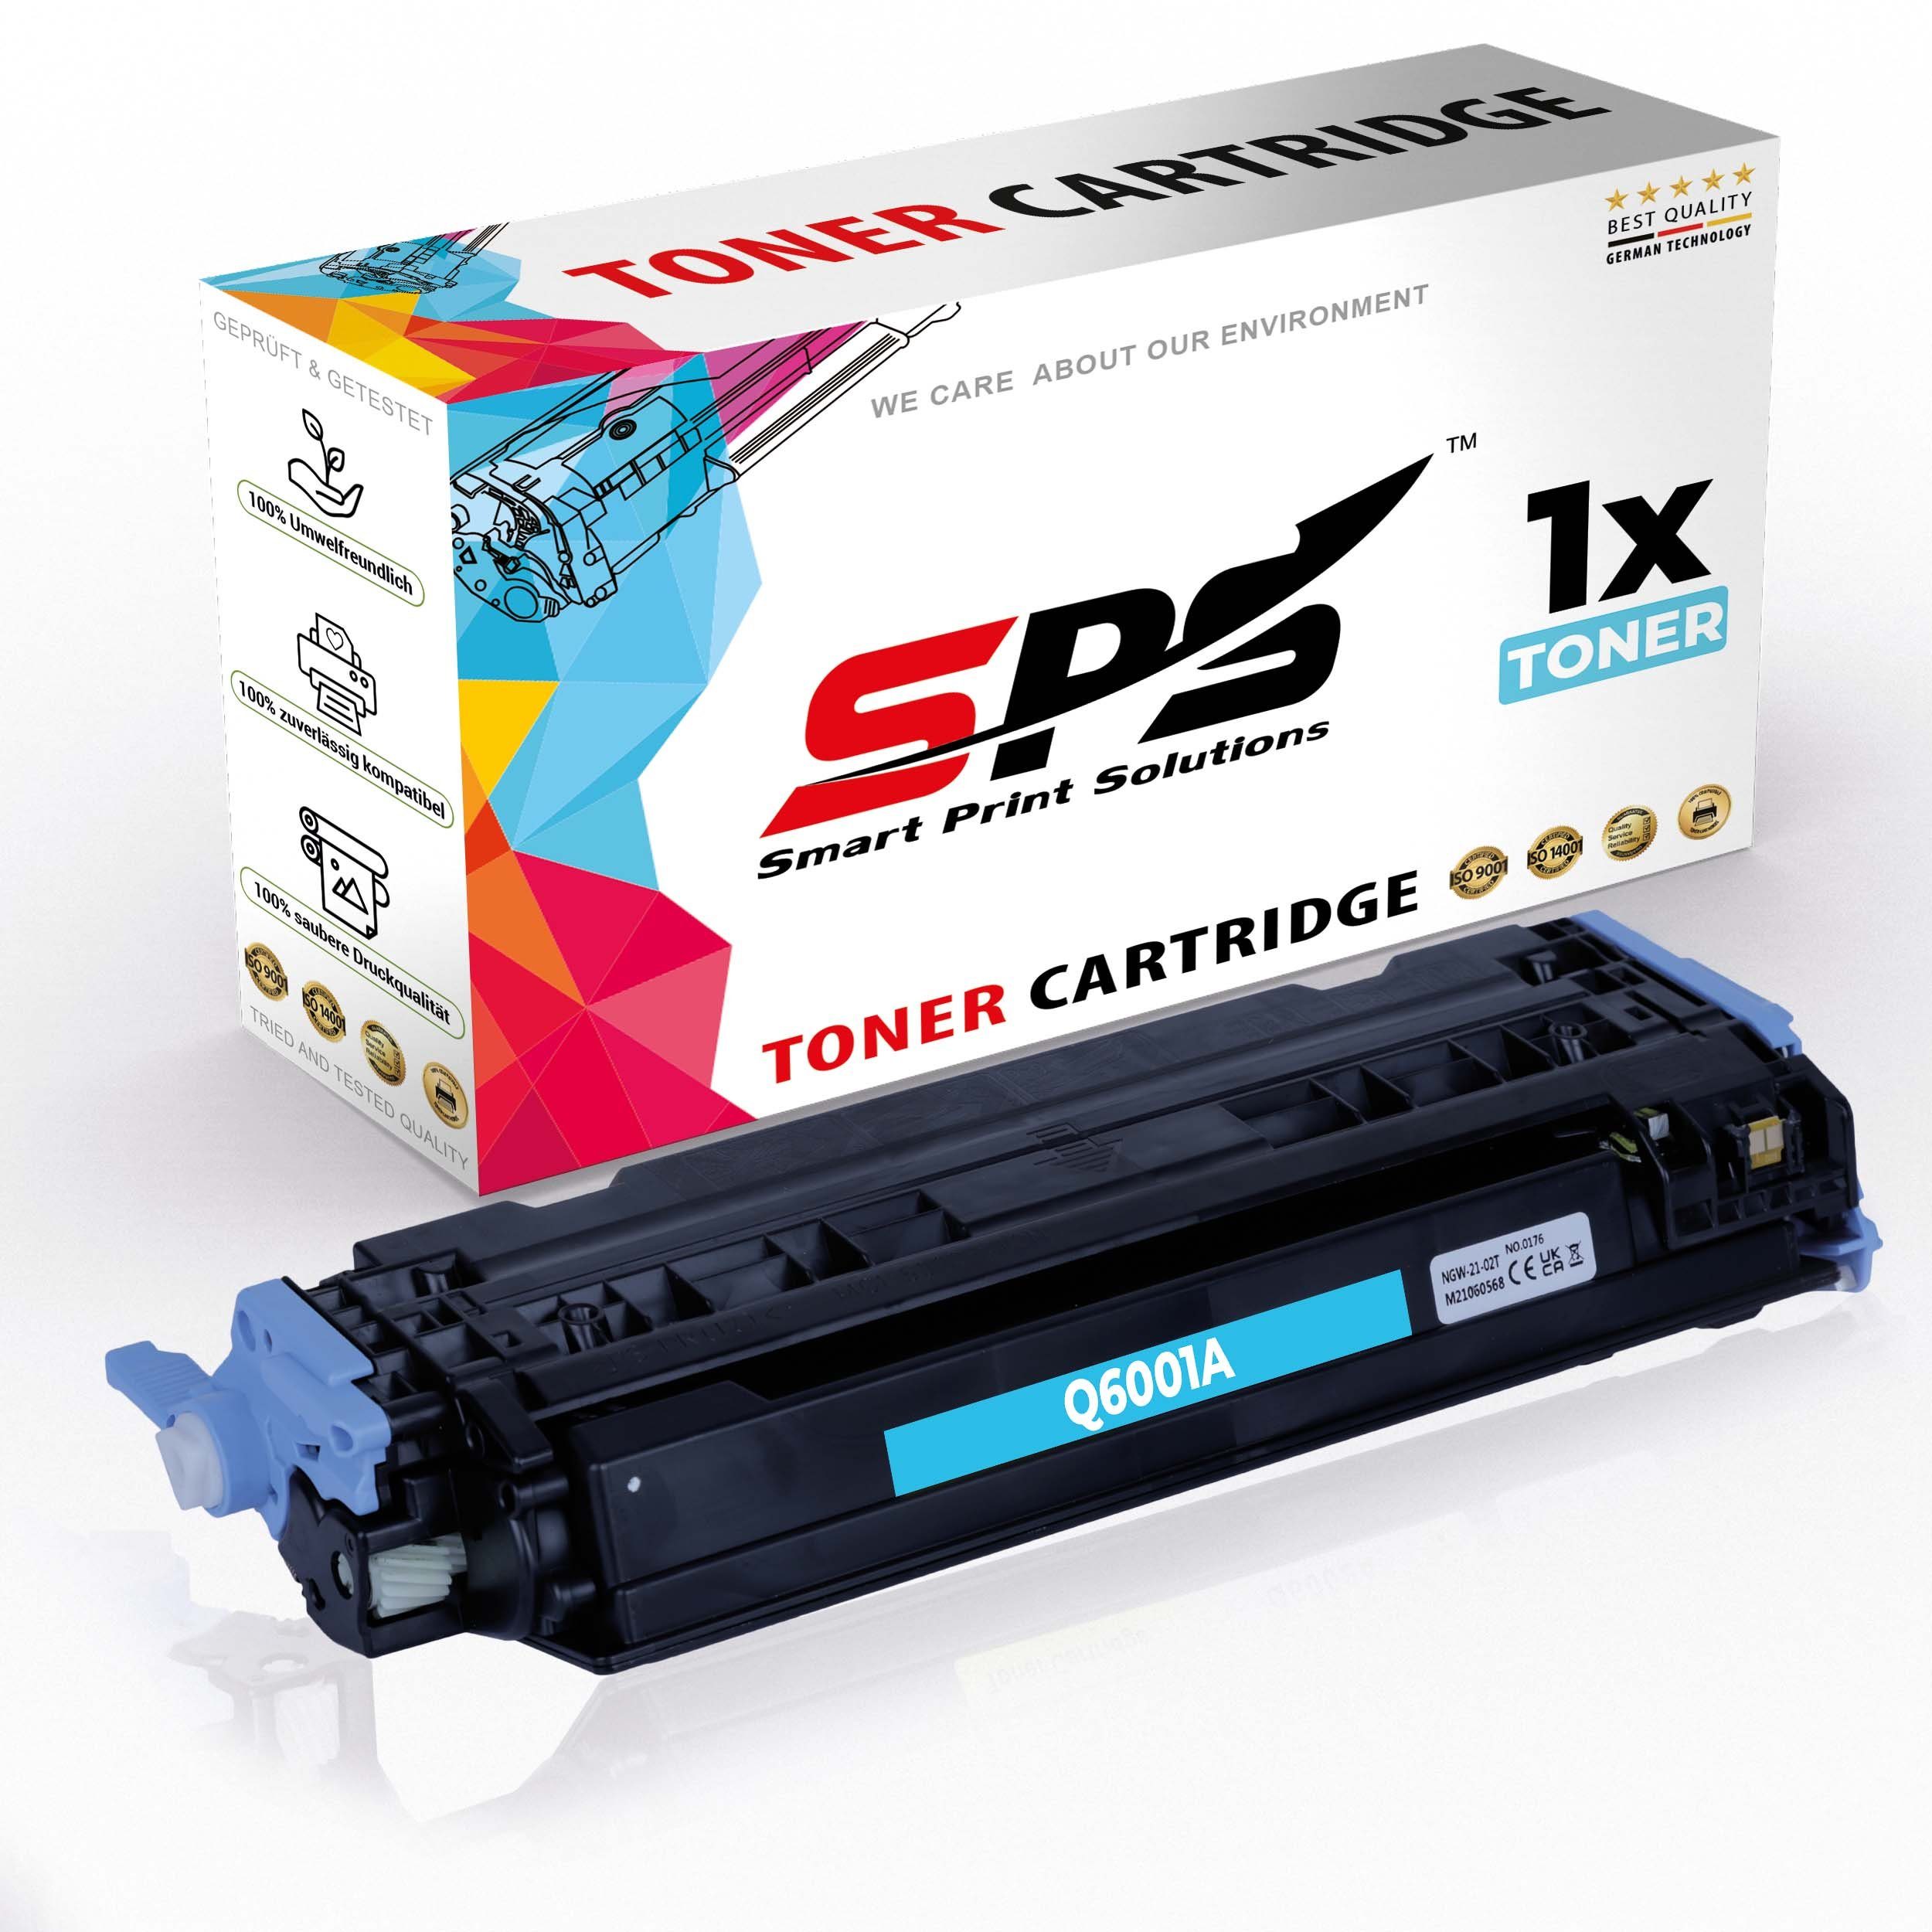 SPS Tonerkartusche Kompatibel für HP Color LaserJet 2605 (Q6001A/124A, (1er Pack, 1x Toner)